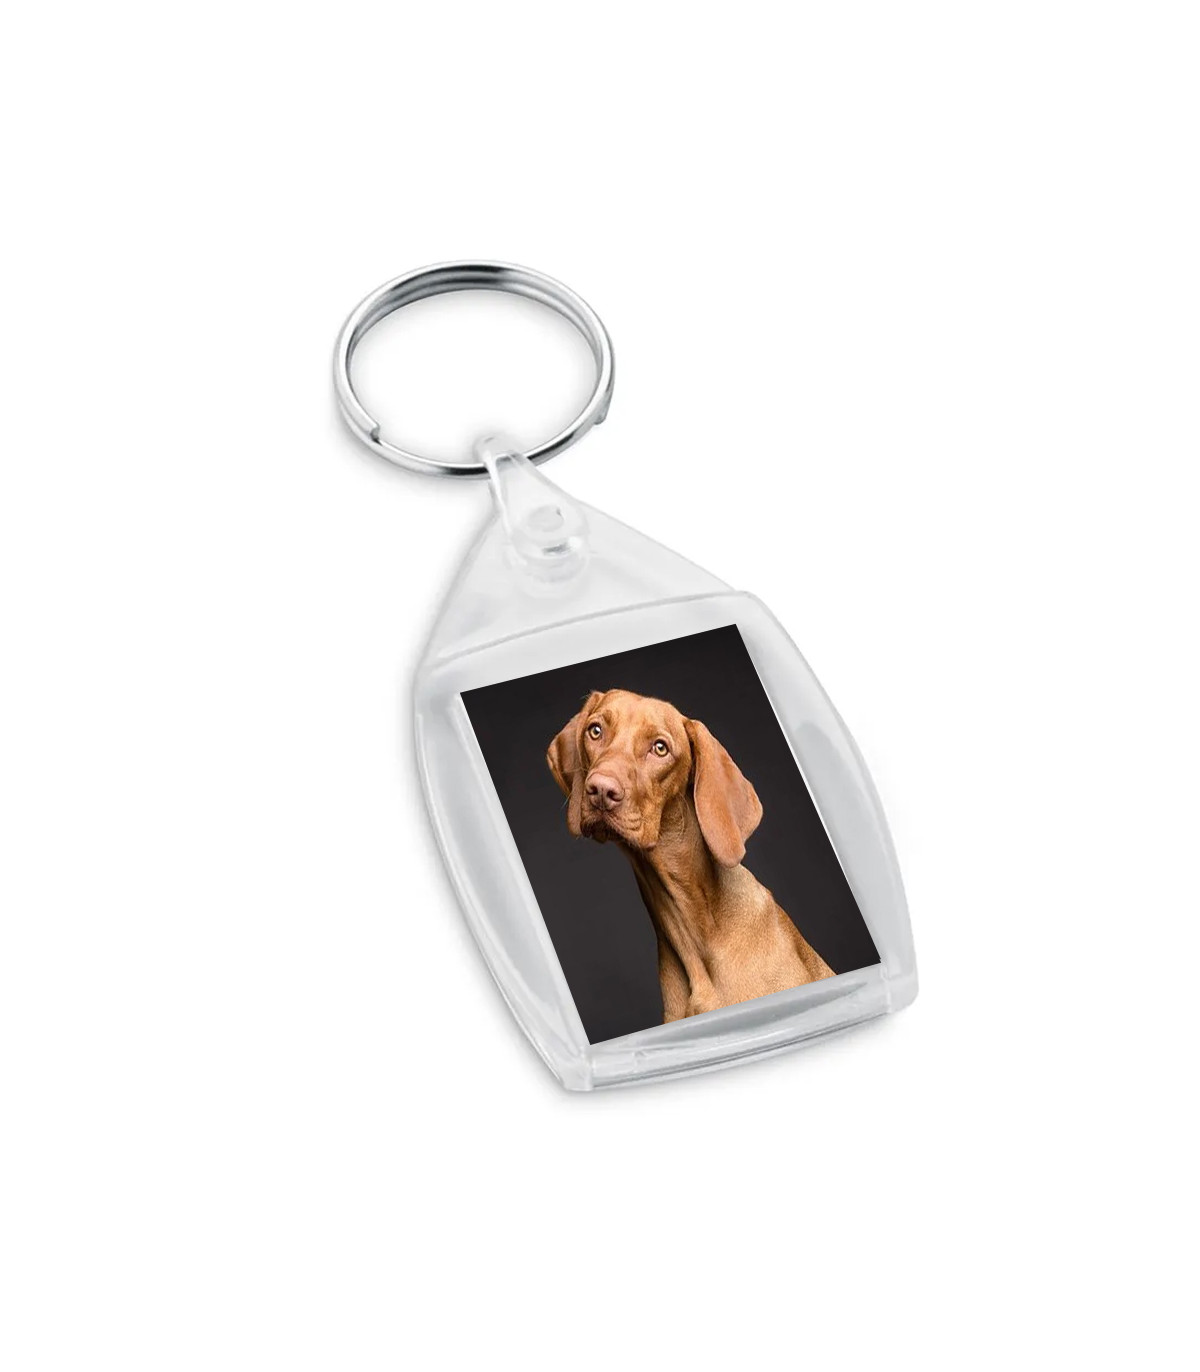 Porte-clé personnalisé chien partir d'une photo